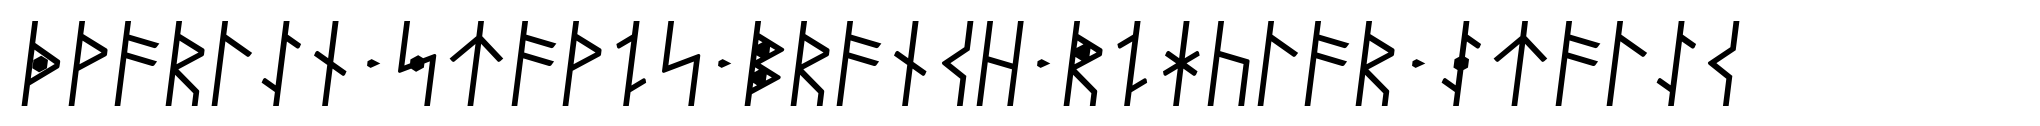 Dvarlin Staves Branch Regular Italic image